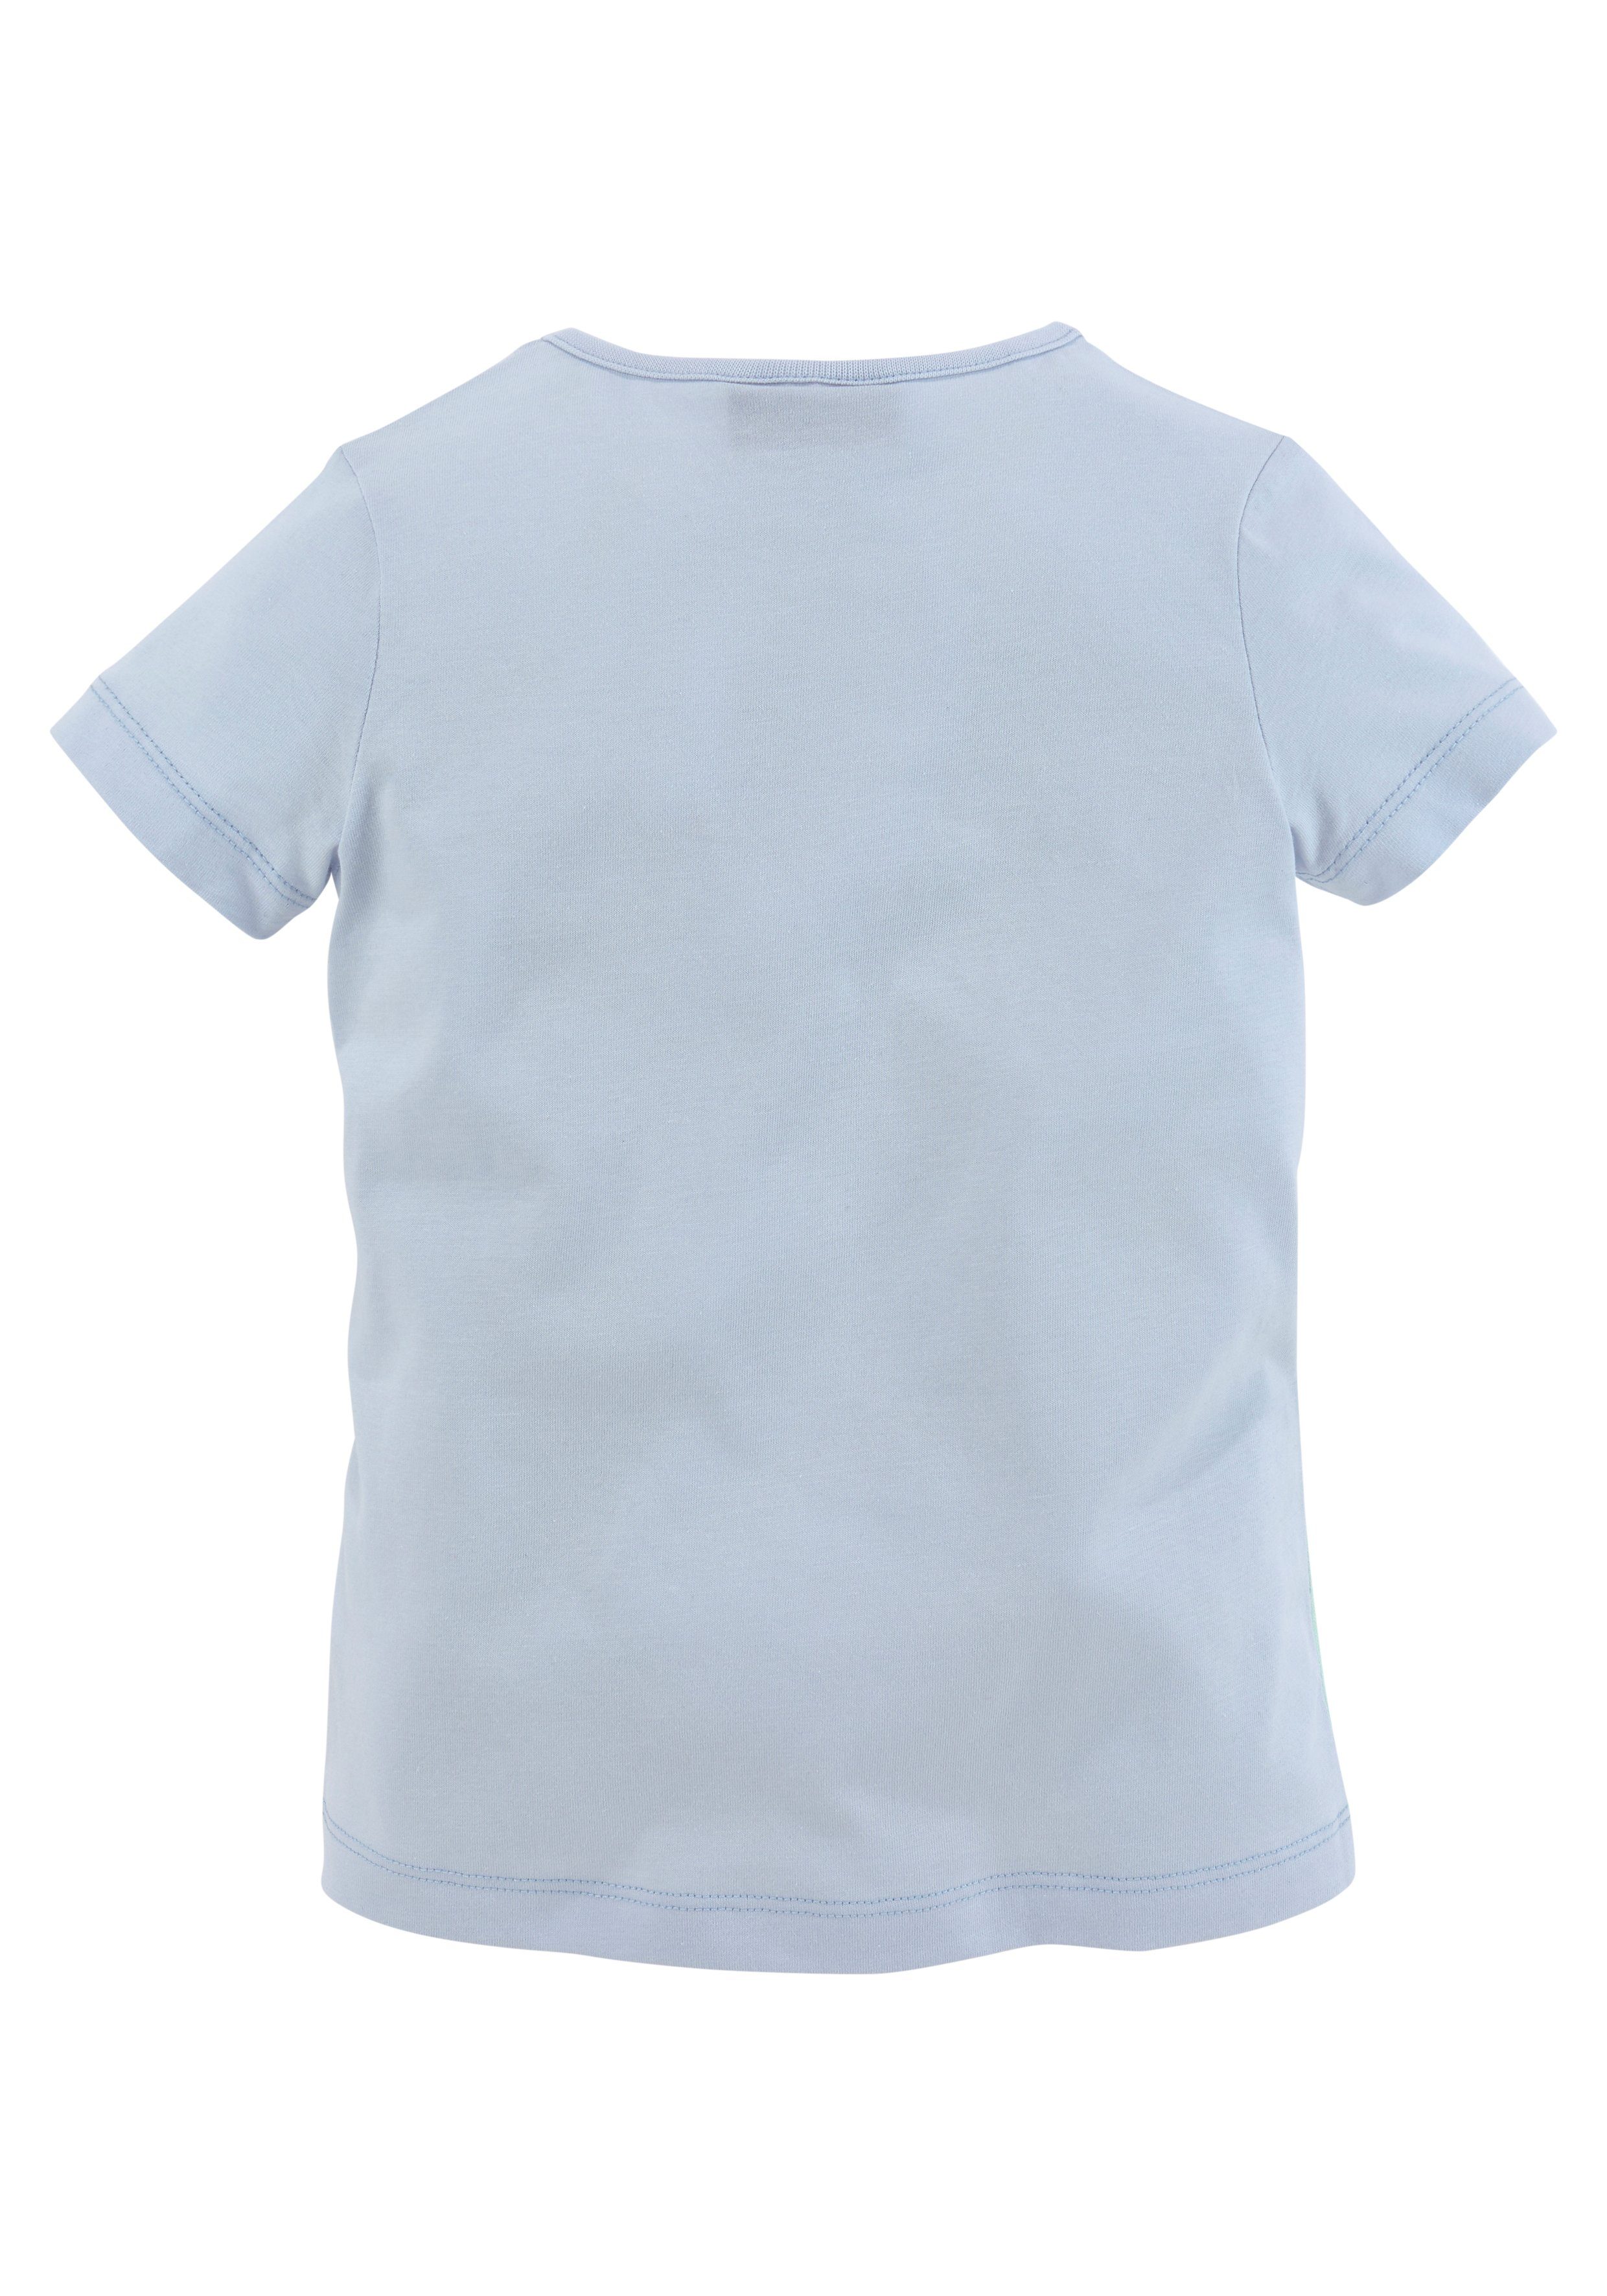 Miss Melody T-Shirt mit Pferdemotiv schönem hellblau